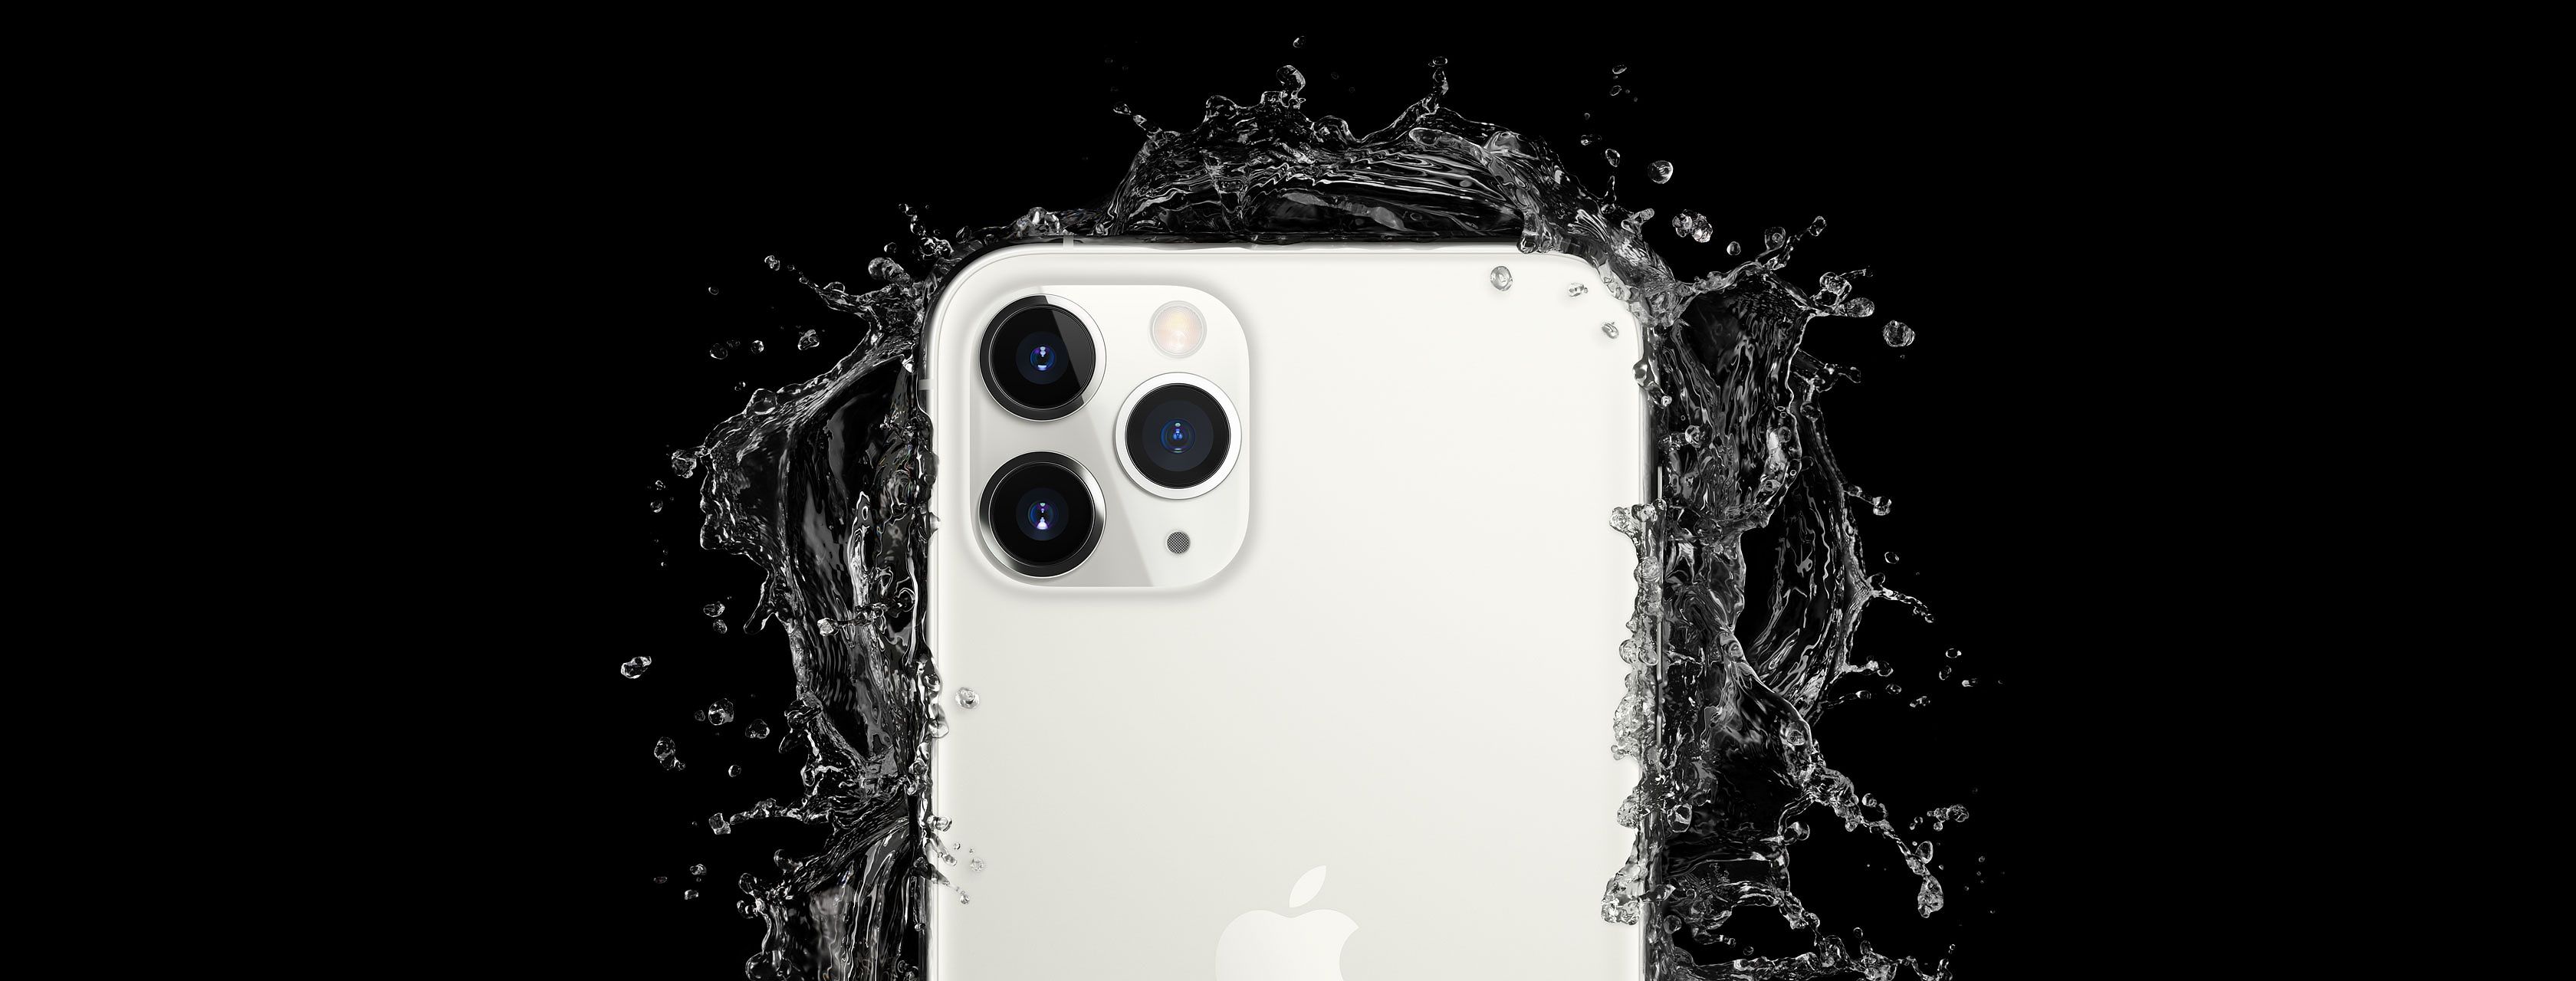 iPhone 11 Pro resistencia agua y polvo